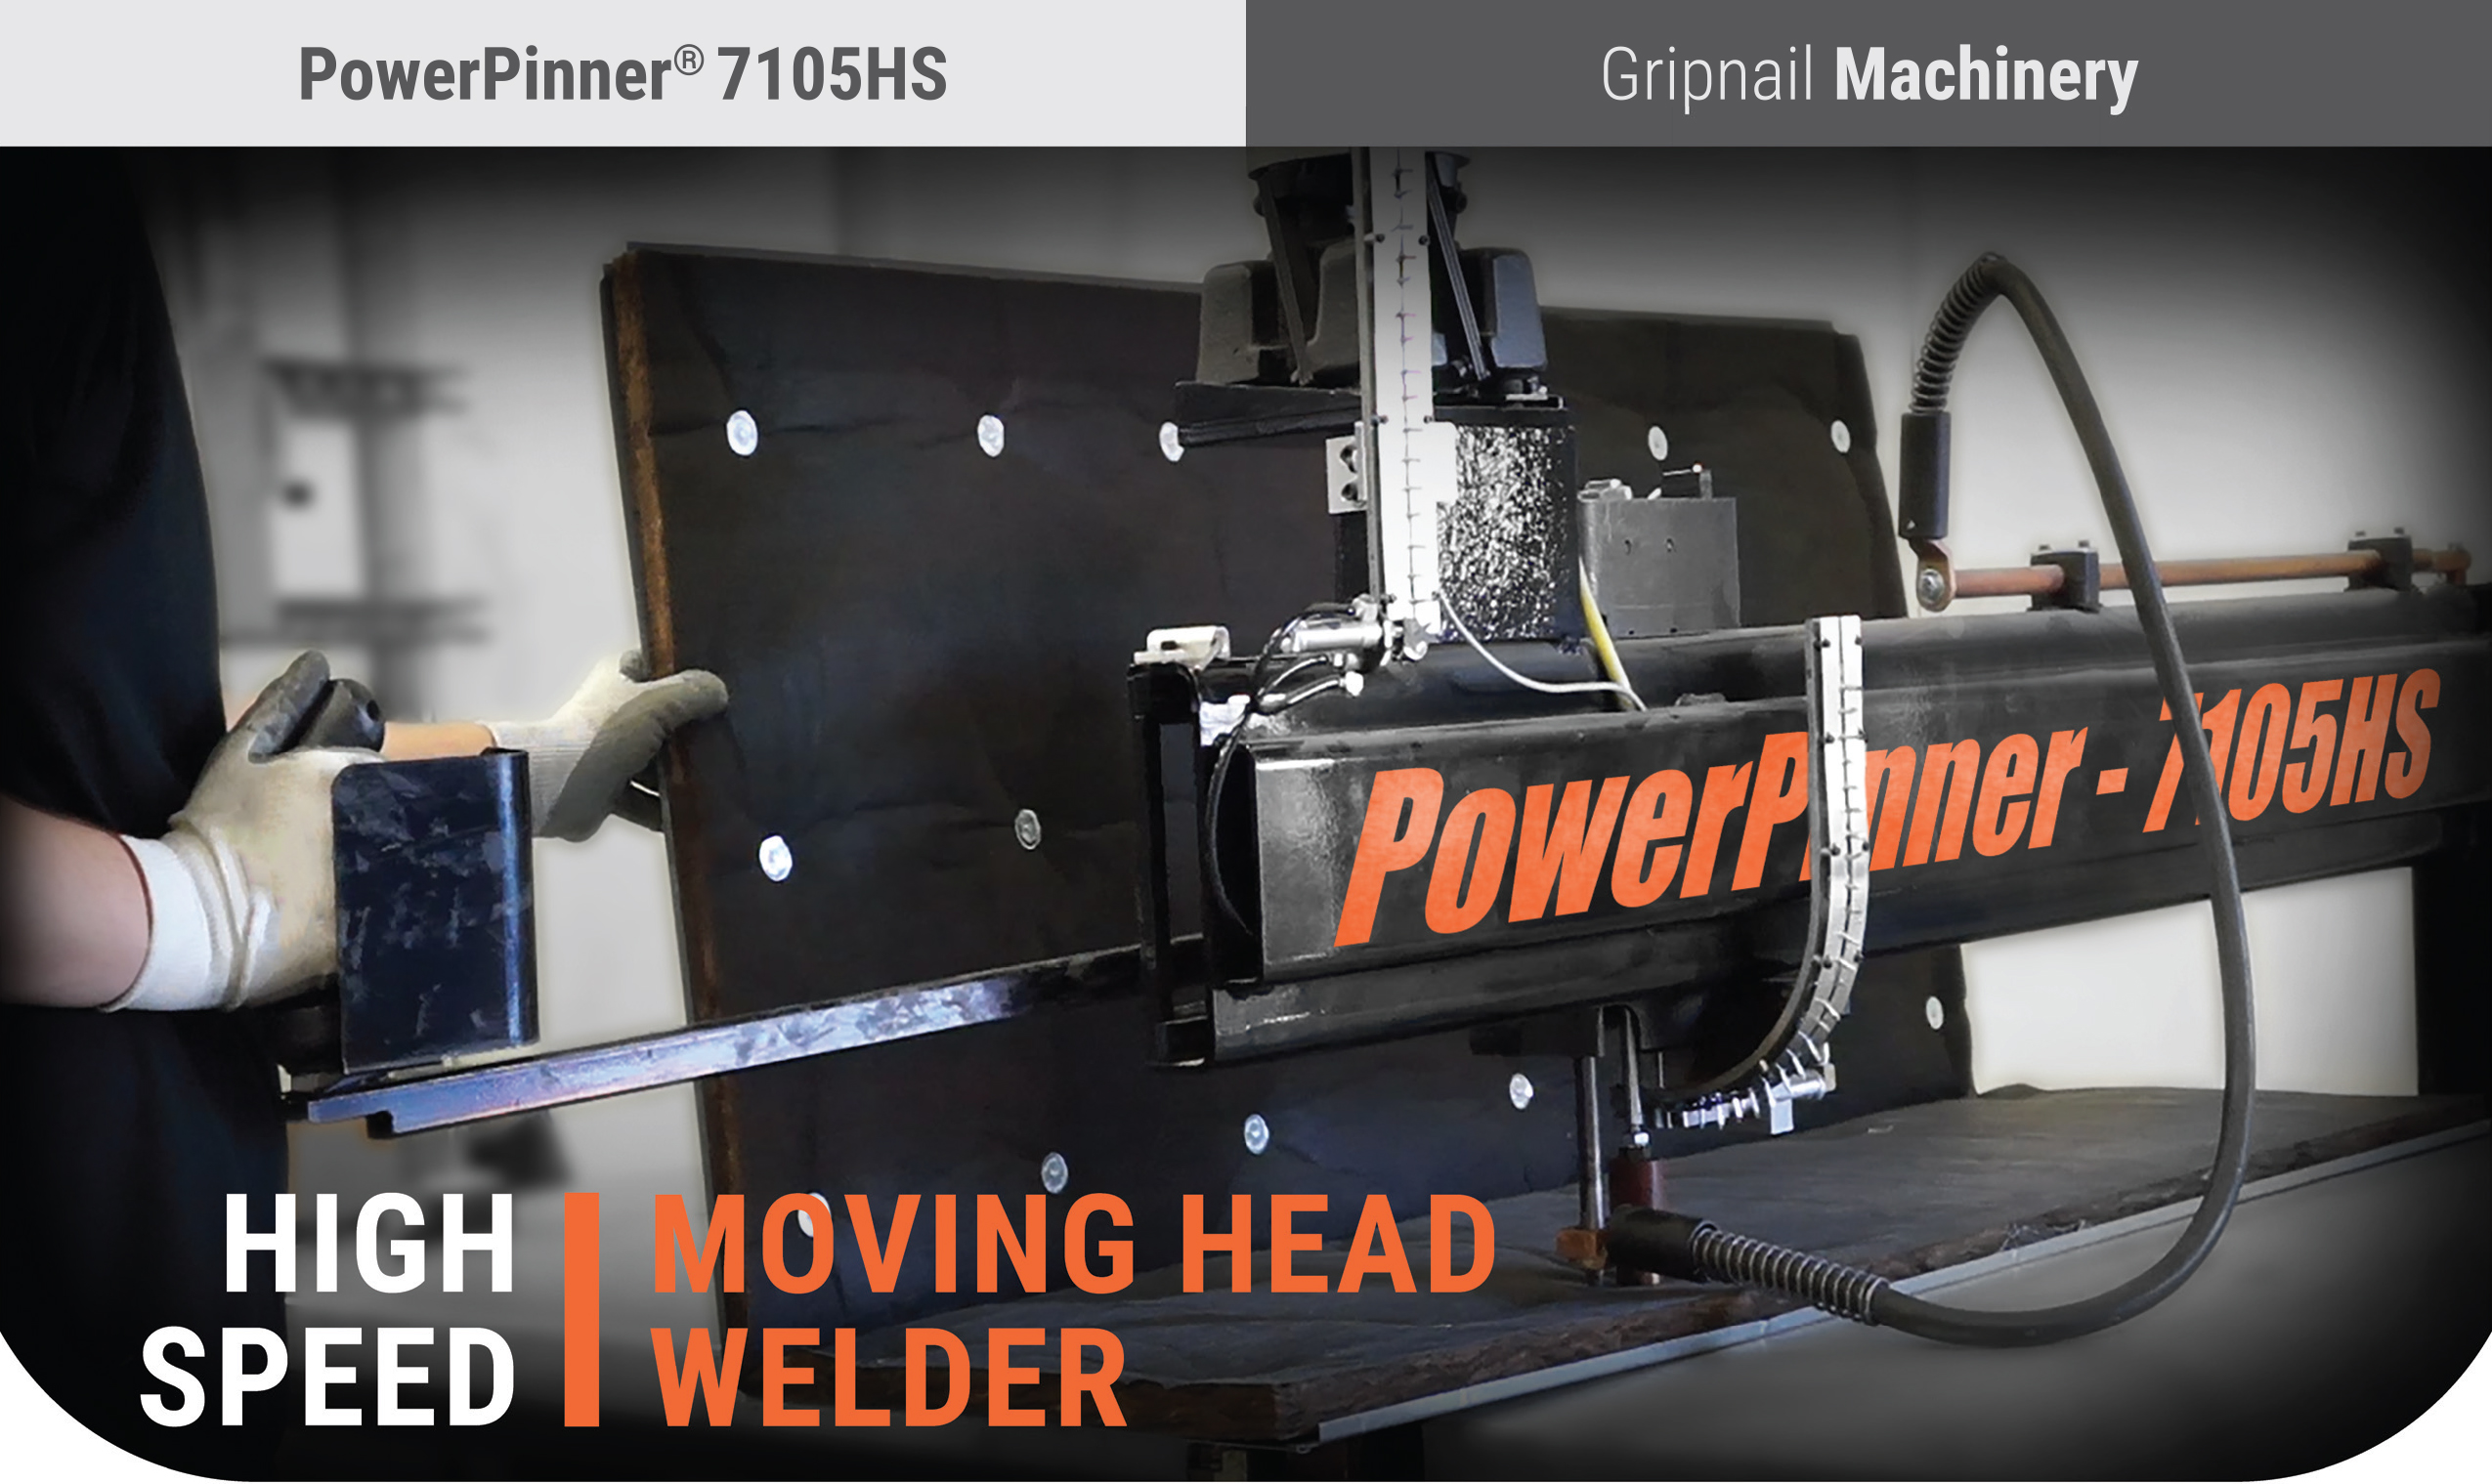 PowerPinner 7105HS (High Speed - Moving Head Welder) Pin Spotter mAIN